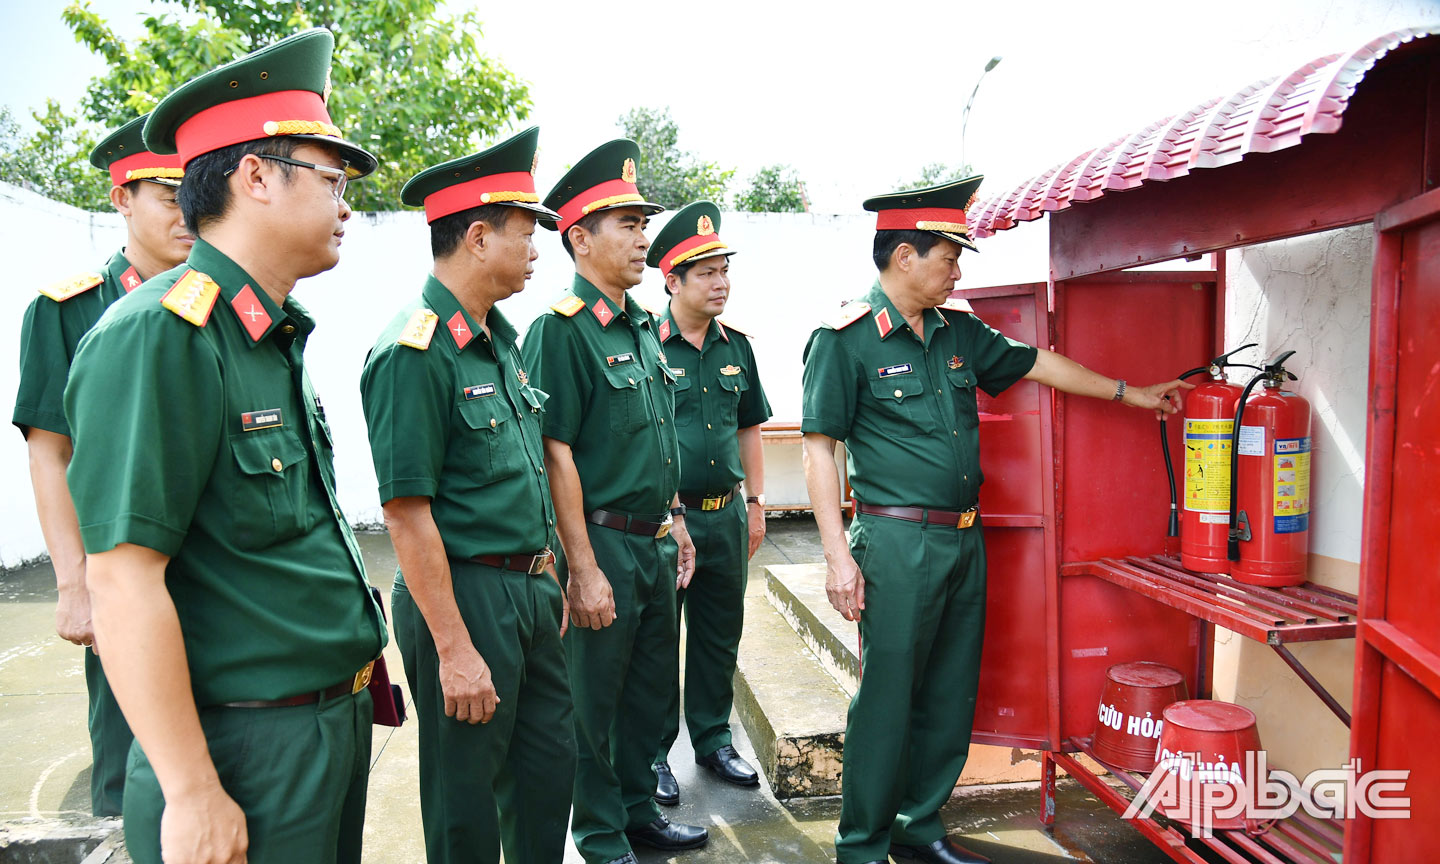 Thiếu tướng Nguyễn Minh Triều, Phó Tư lệnh Quân khu 9  kiểm tra hệ thống phòng, chống cháy nổ tại nhà kho quân khí  của Ban CHQS huyện Tân Phú Đông.